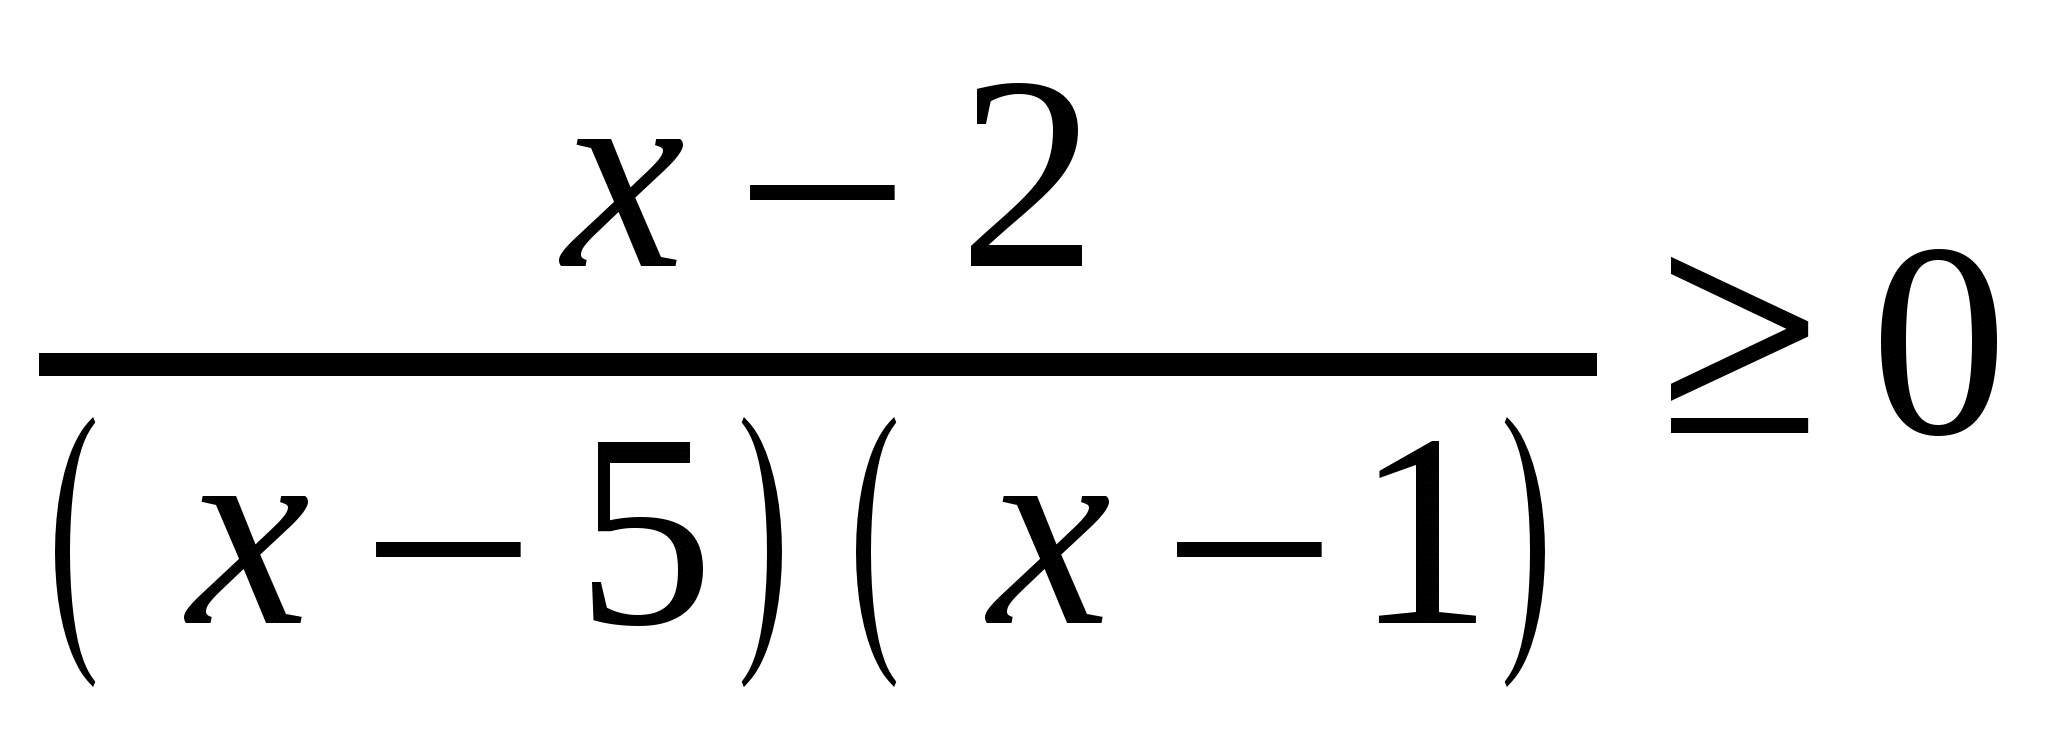 Конспект урока по алгебре на тему: «Решение неравенств методом интервалов».(9 класс)